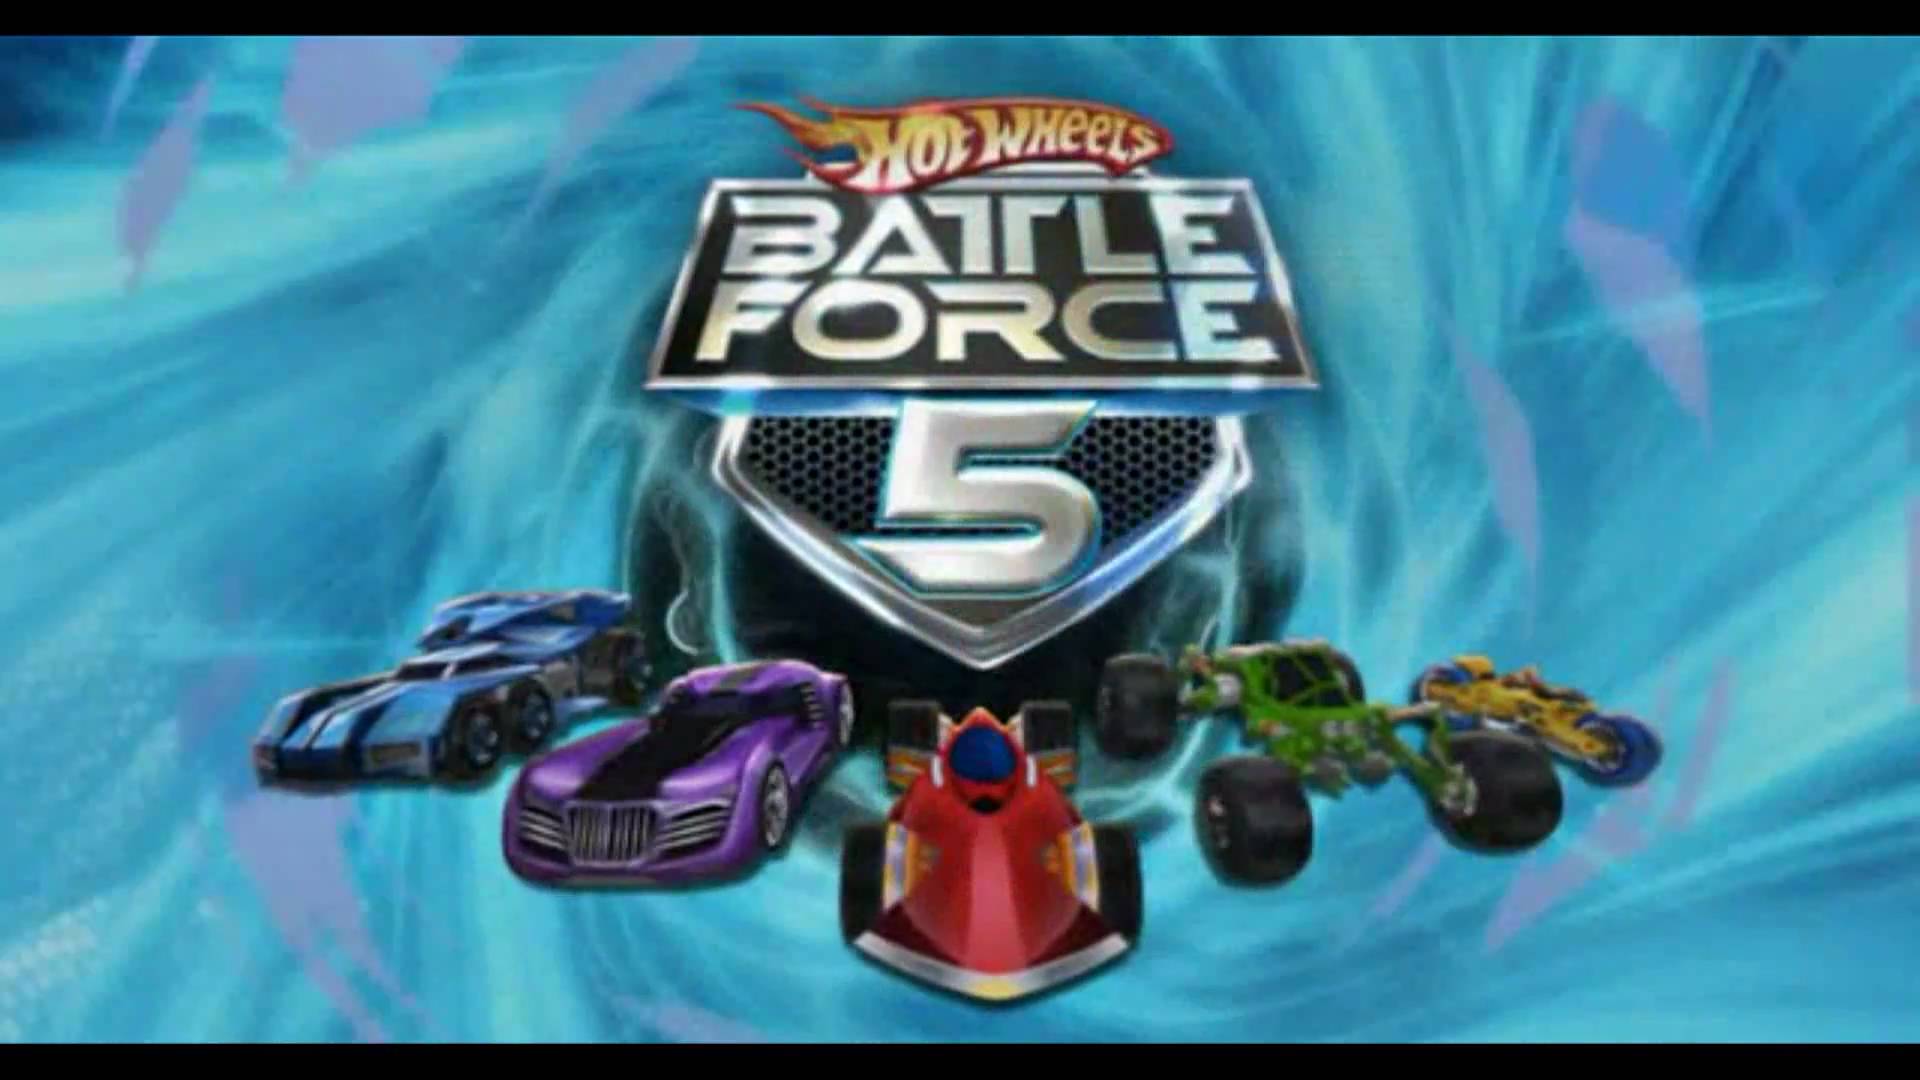 battle ki force 5